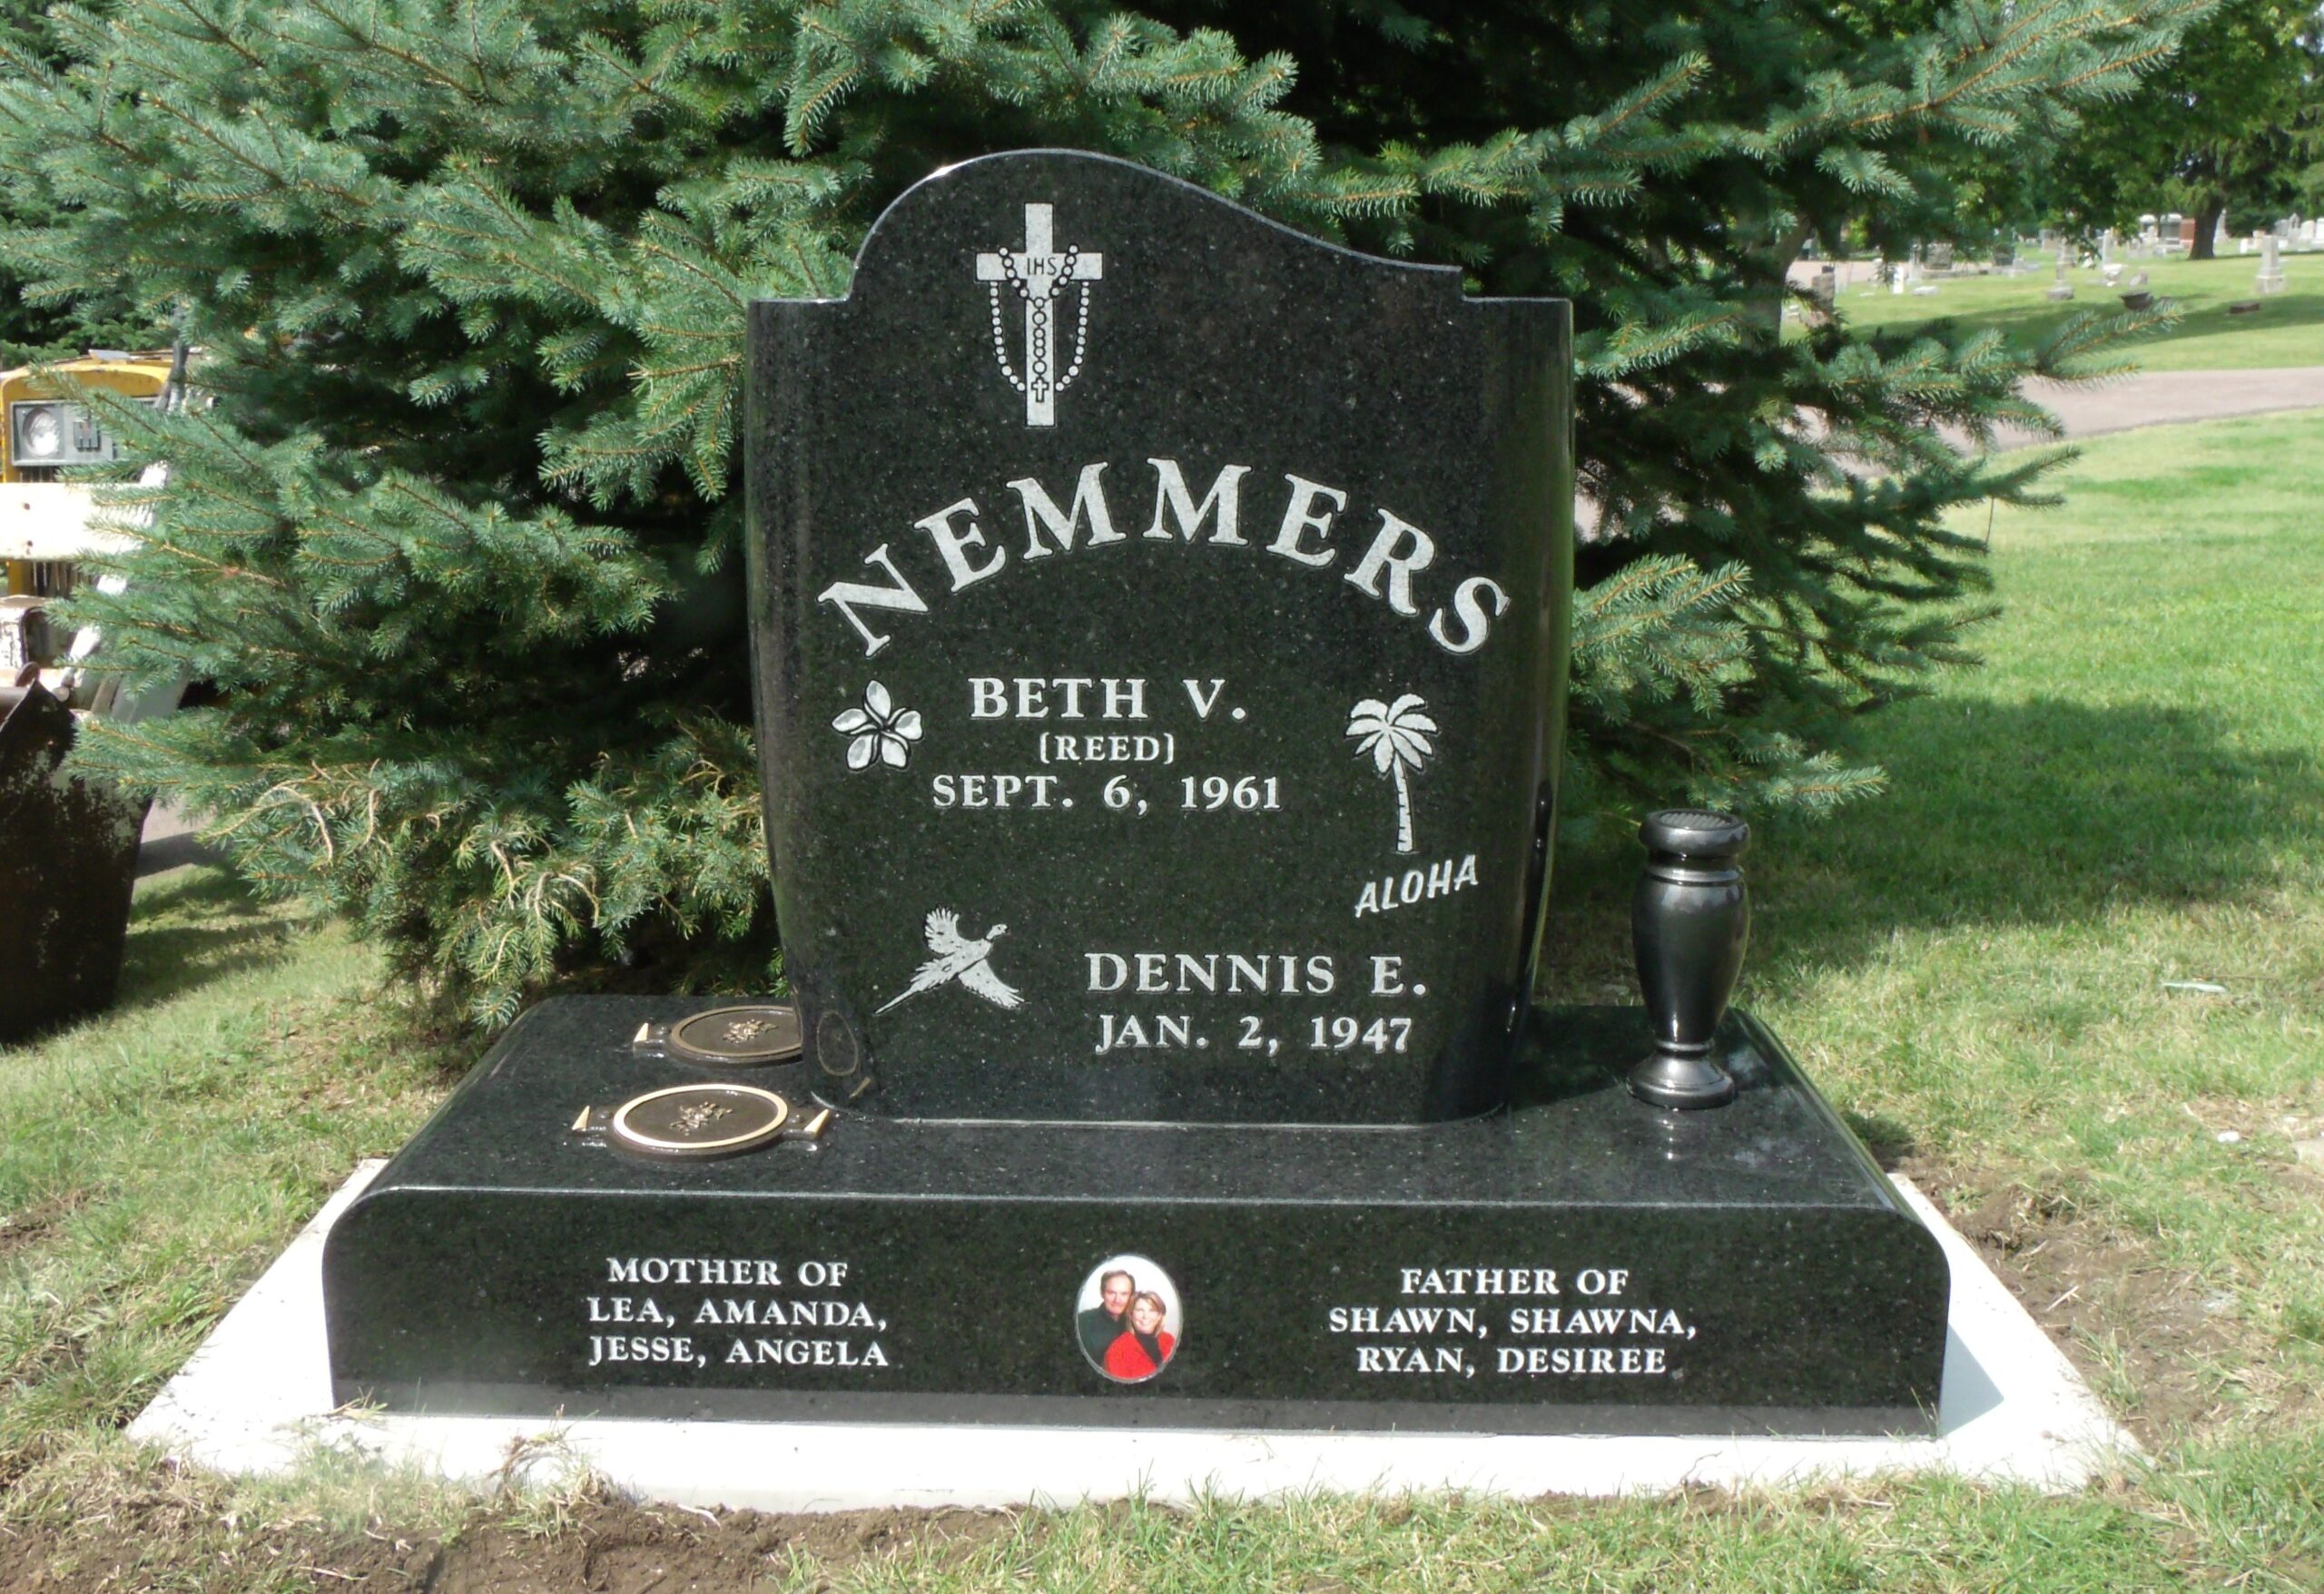 Nemmers Cremation Memorial